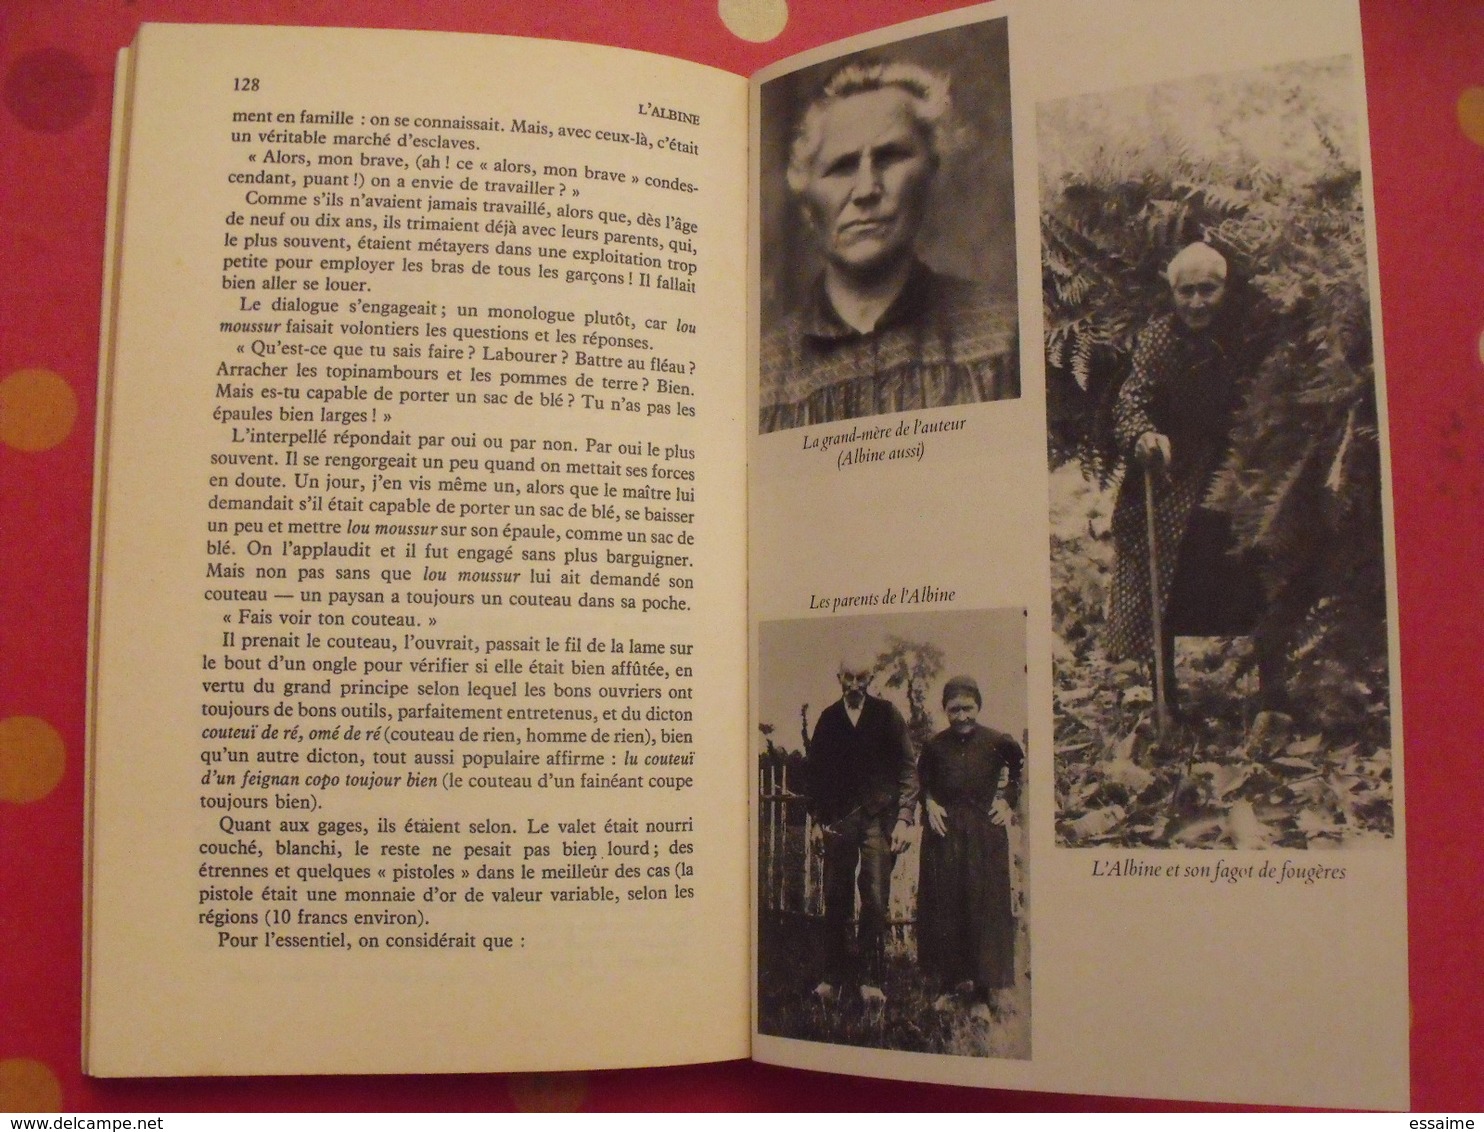 L'Albine. Fernand Dupuy. Scènes de la vie en Limousin et en Périgord vert. Fayard 1977. bien illustré